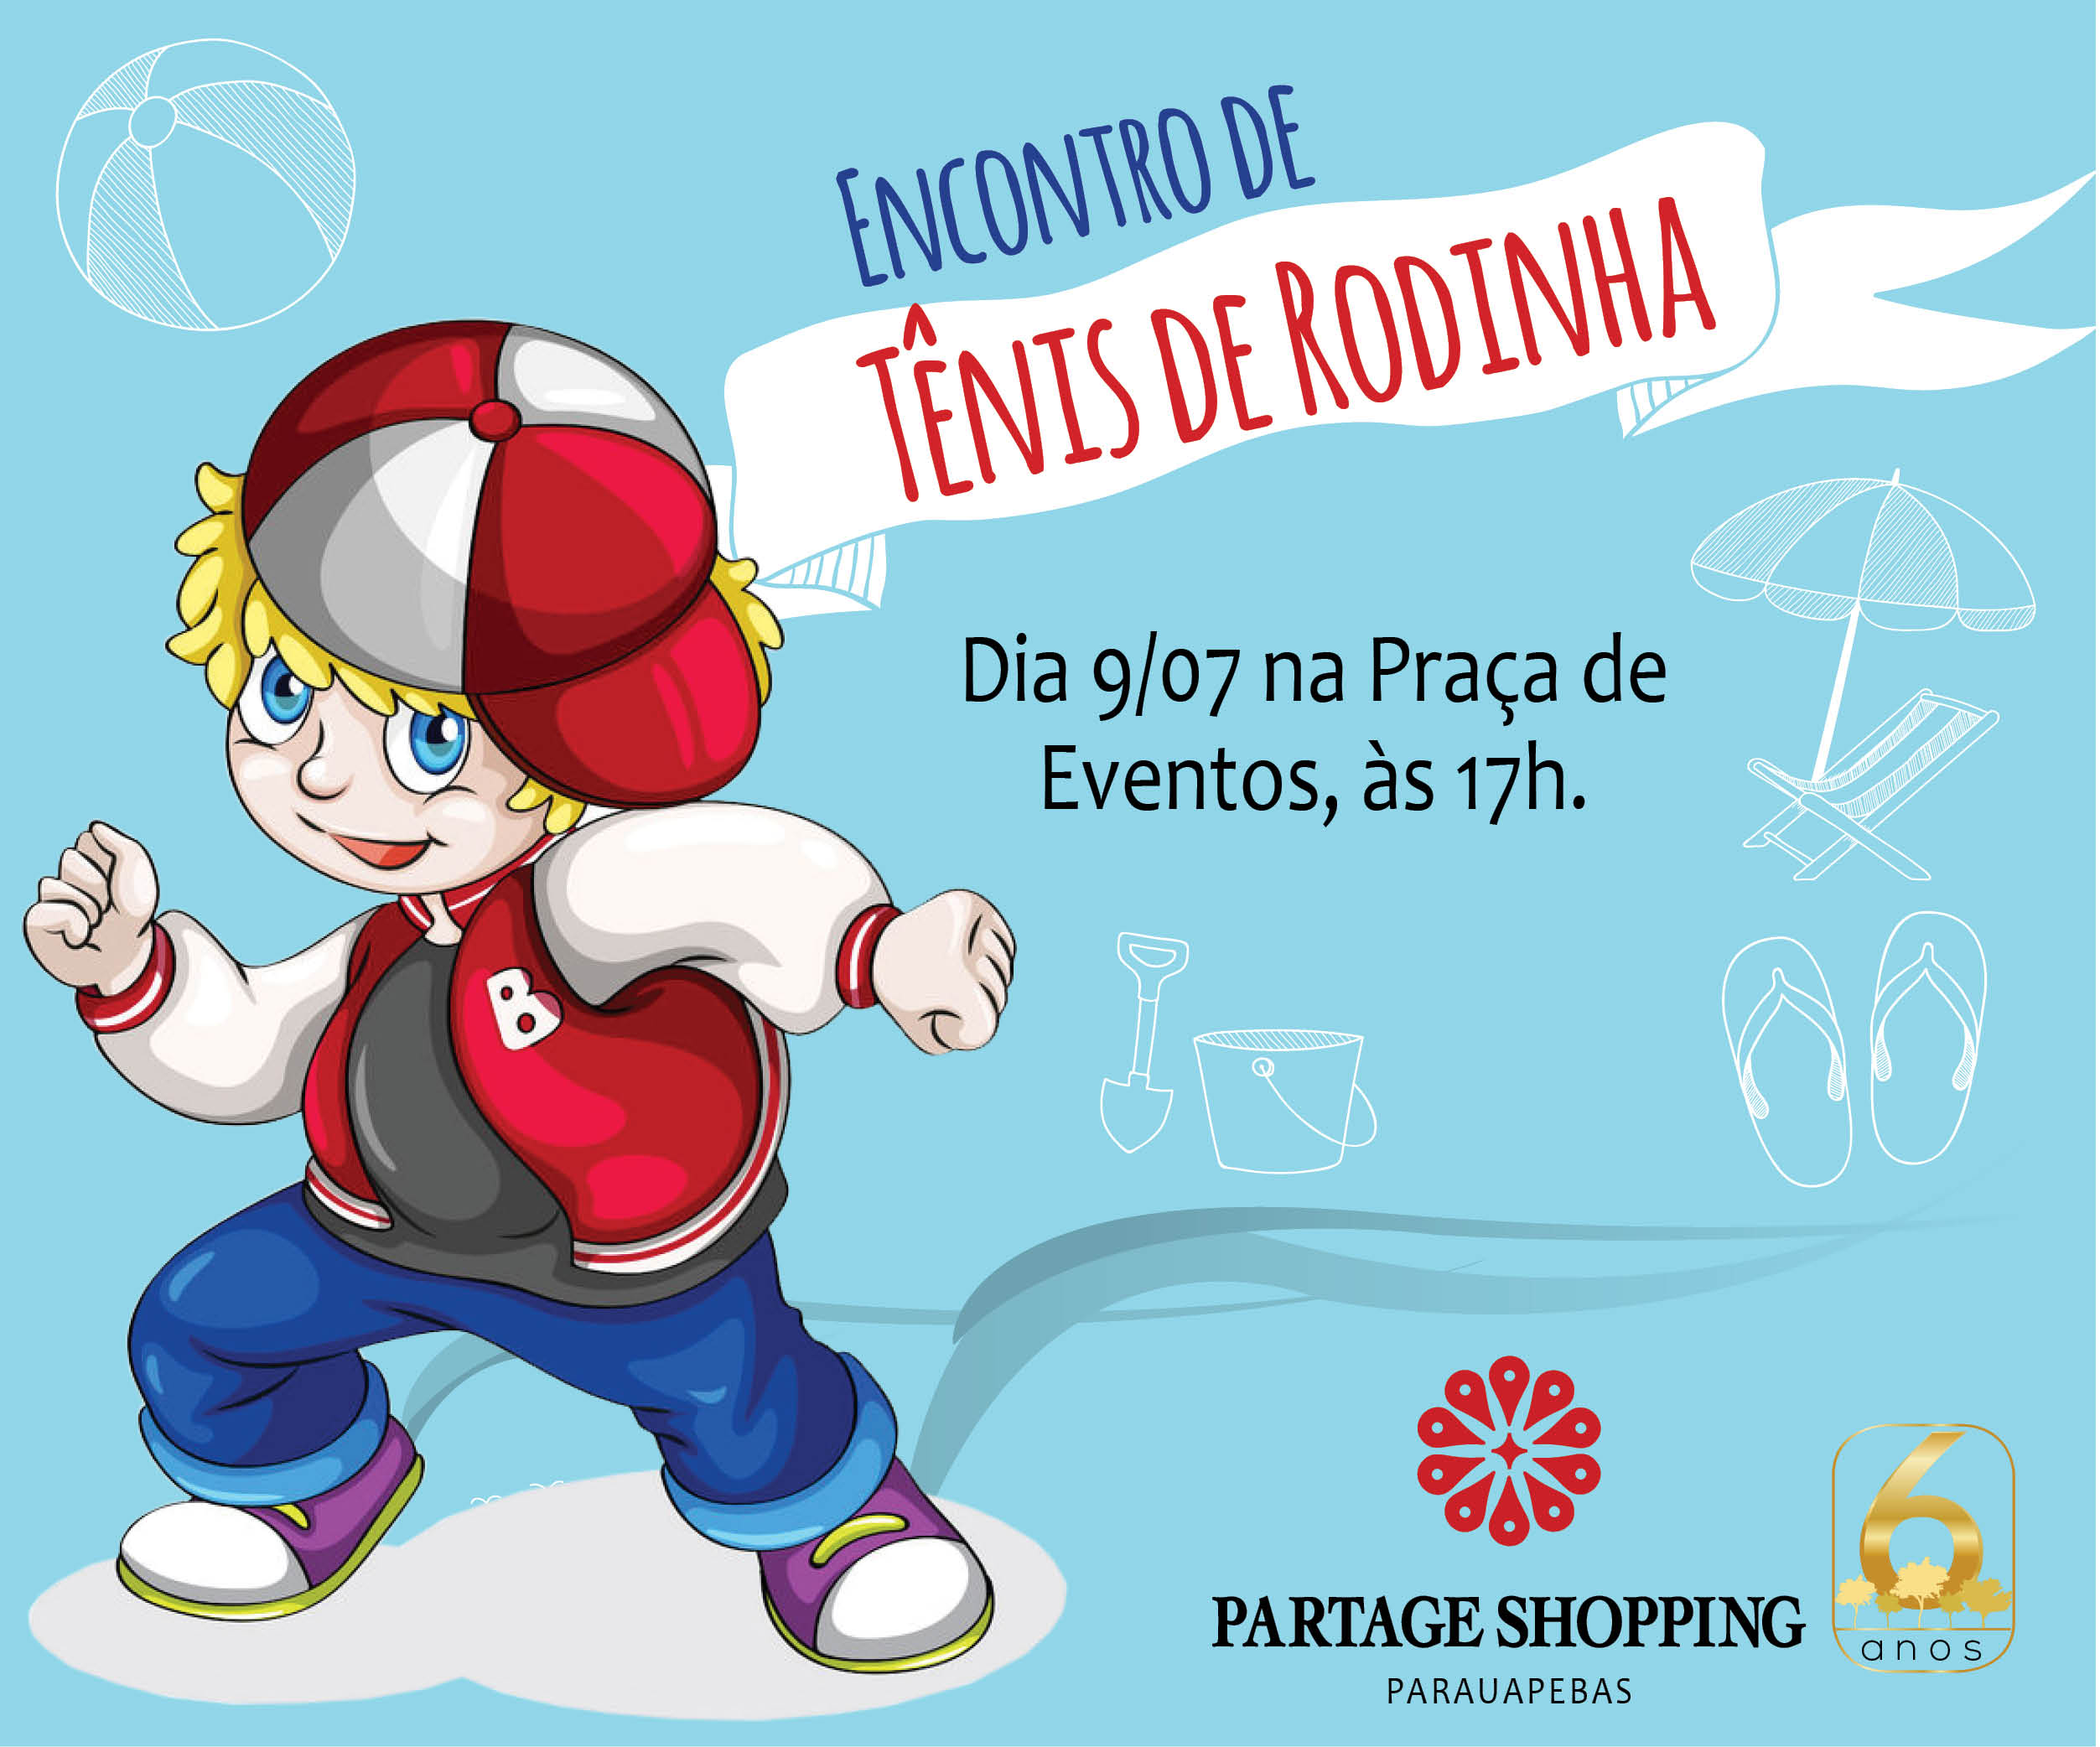  Partage Shopping realiza o 1º Encontro de Tênis de Rodinha